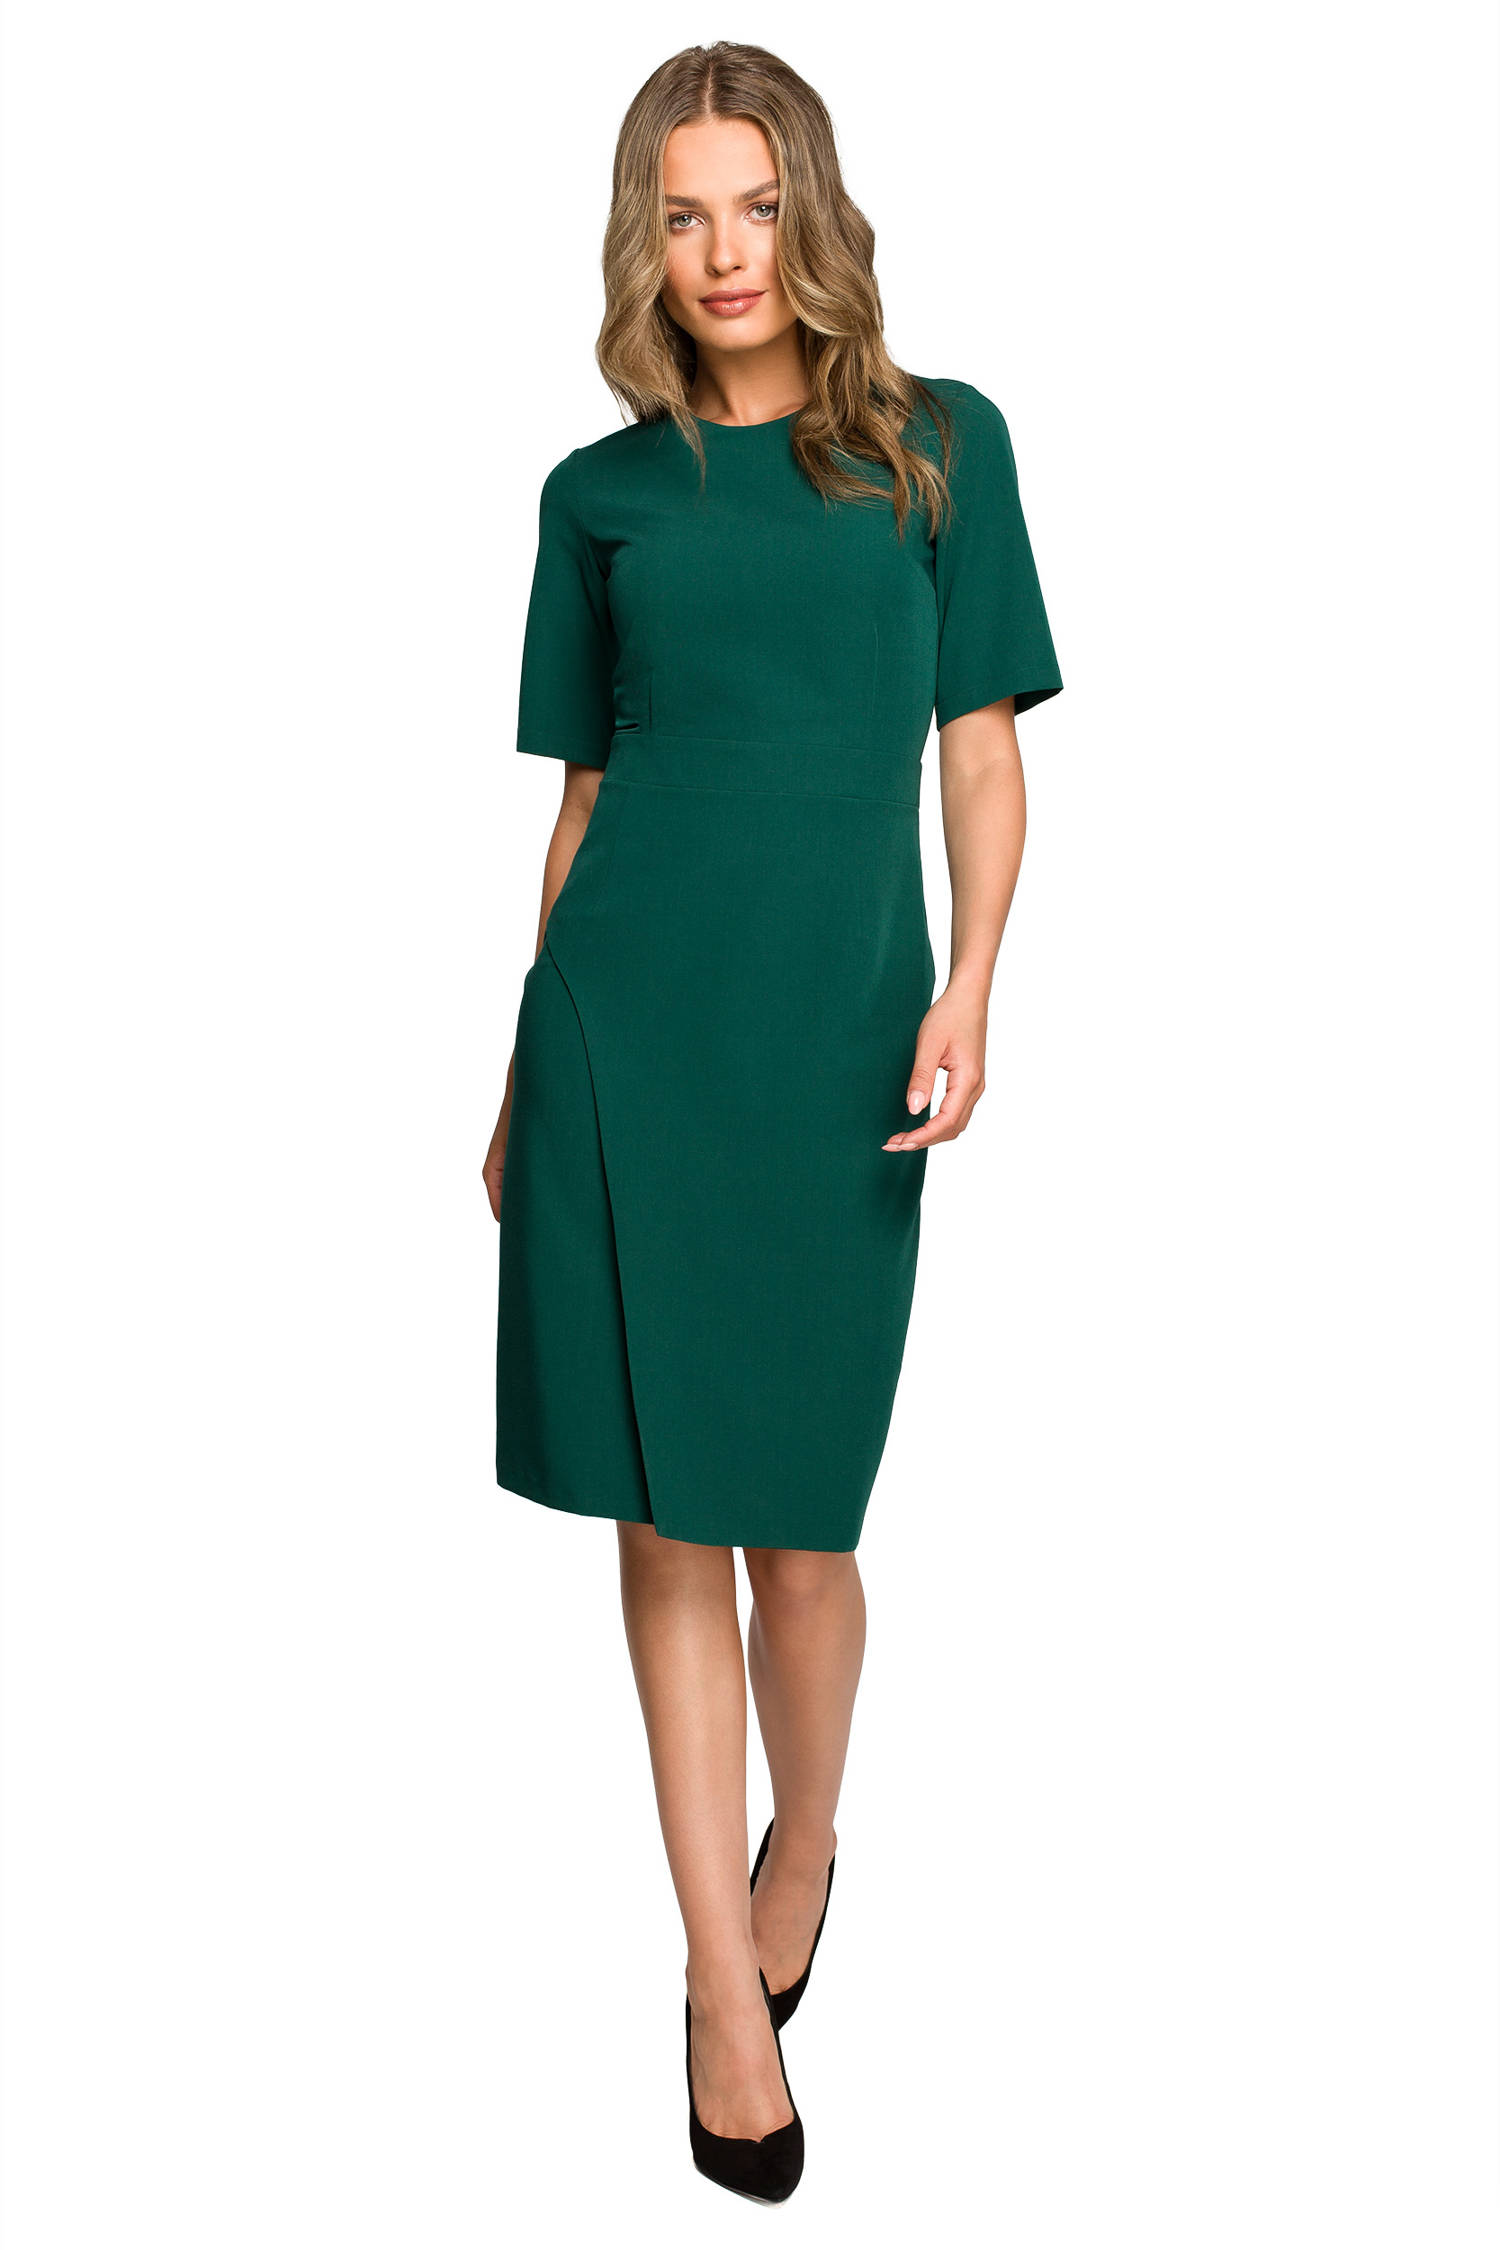 Opis: Elegancka sukienka ołówkowa z dołem na zakładkę klasyczna zielona.